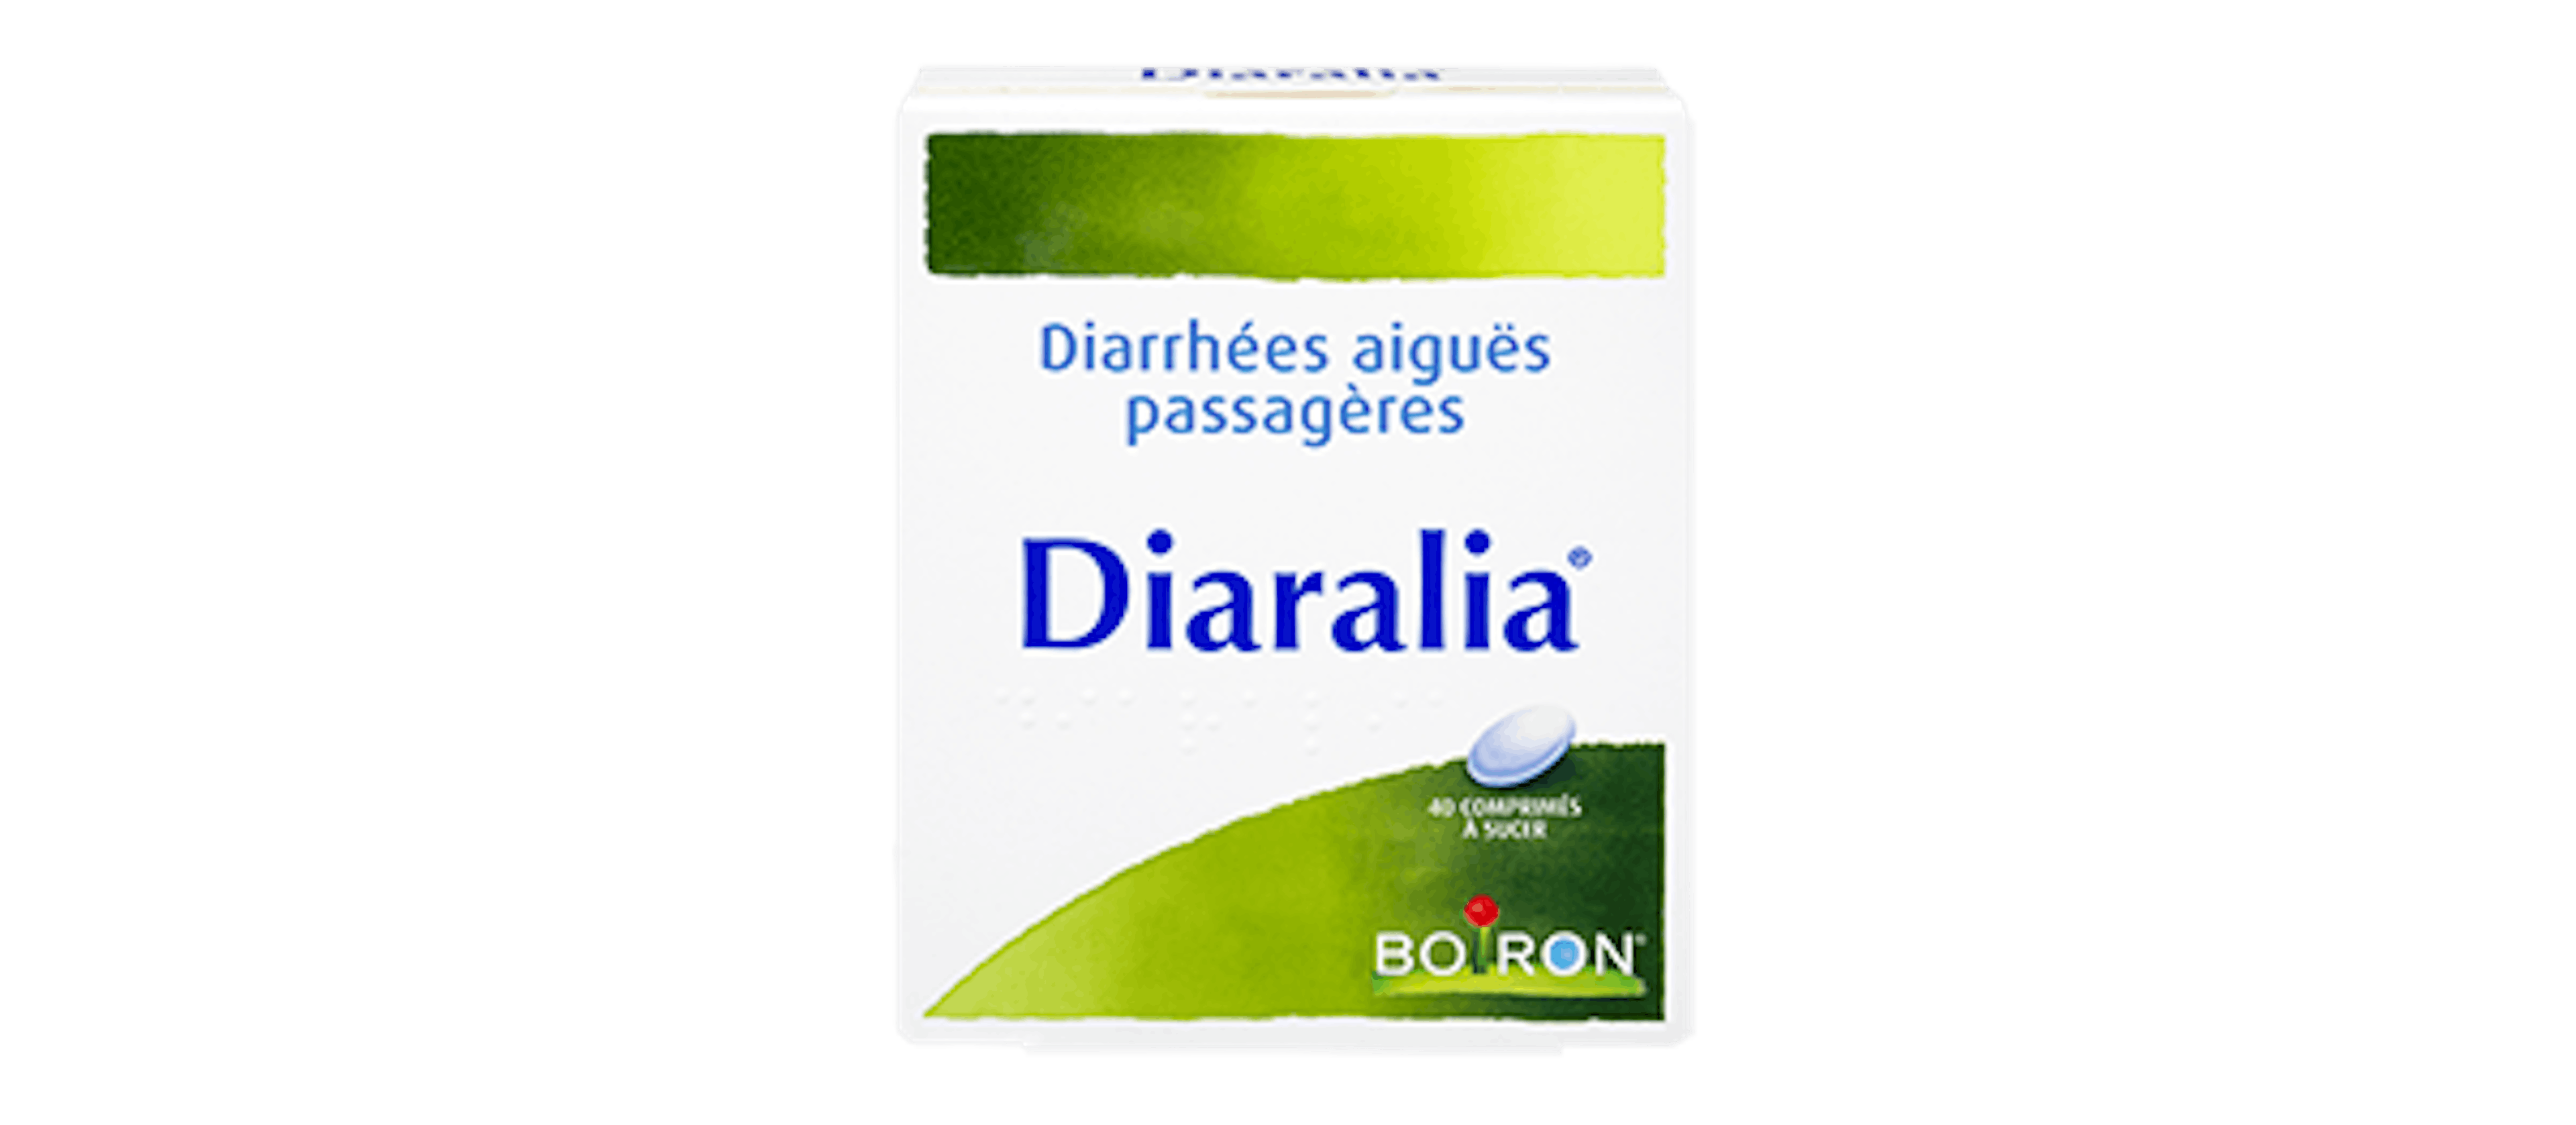 Homéopathie diarrhées aiguës - Diaralia® Boiron